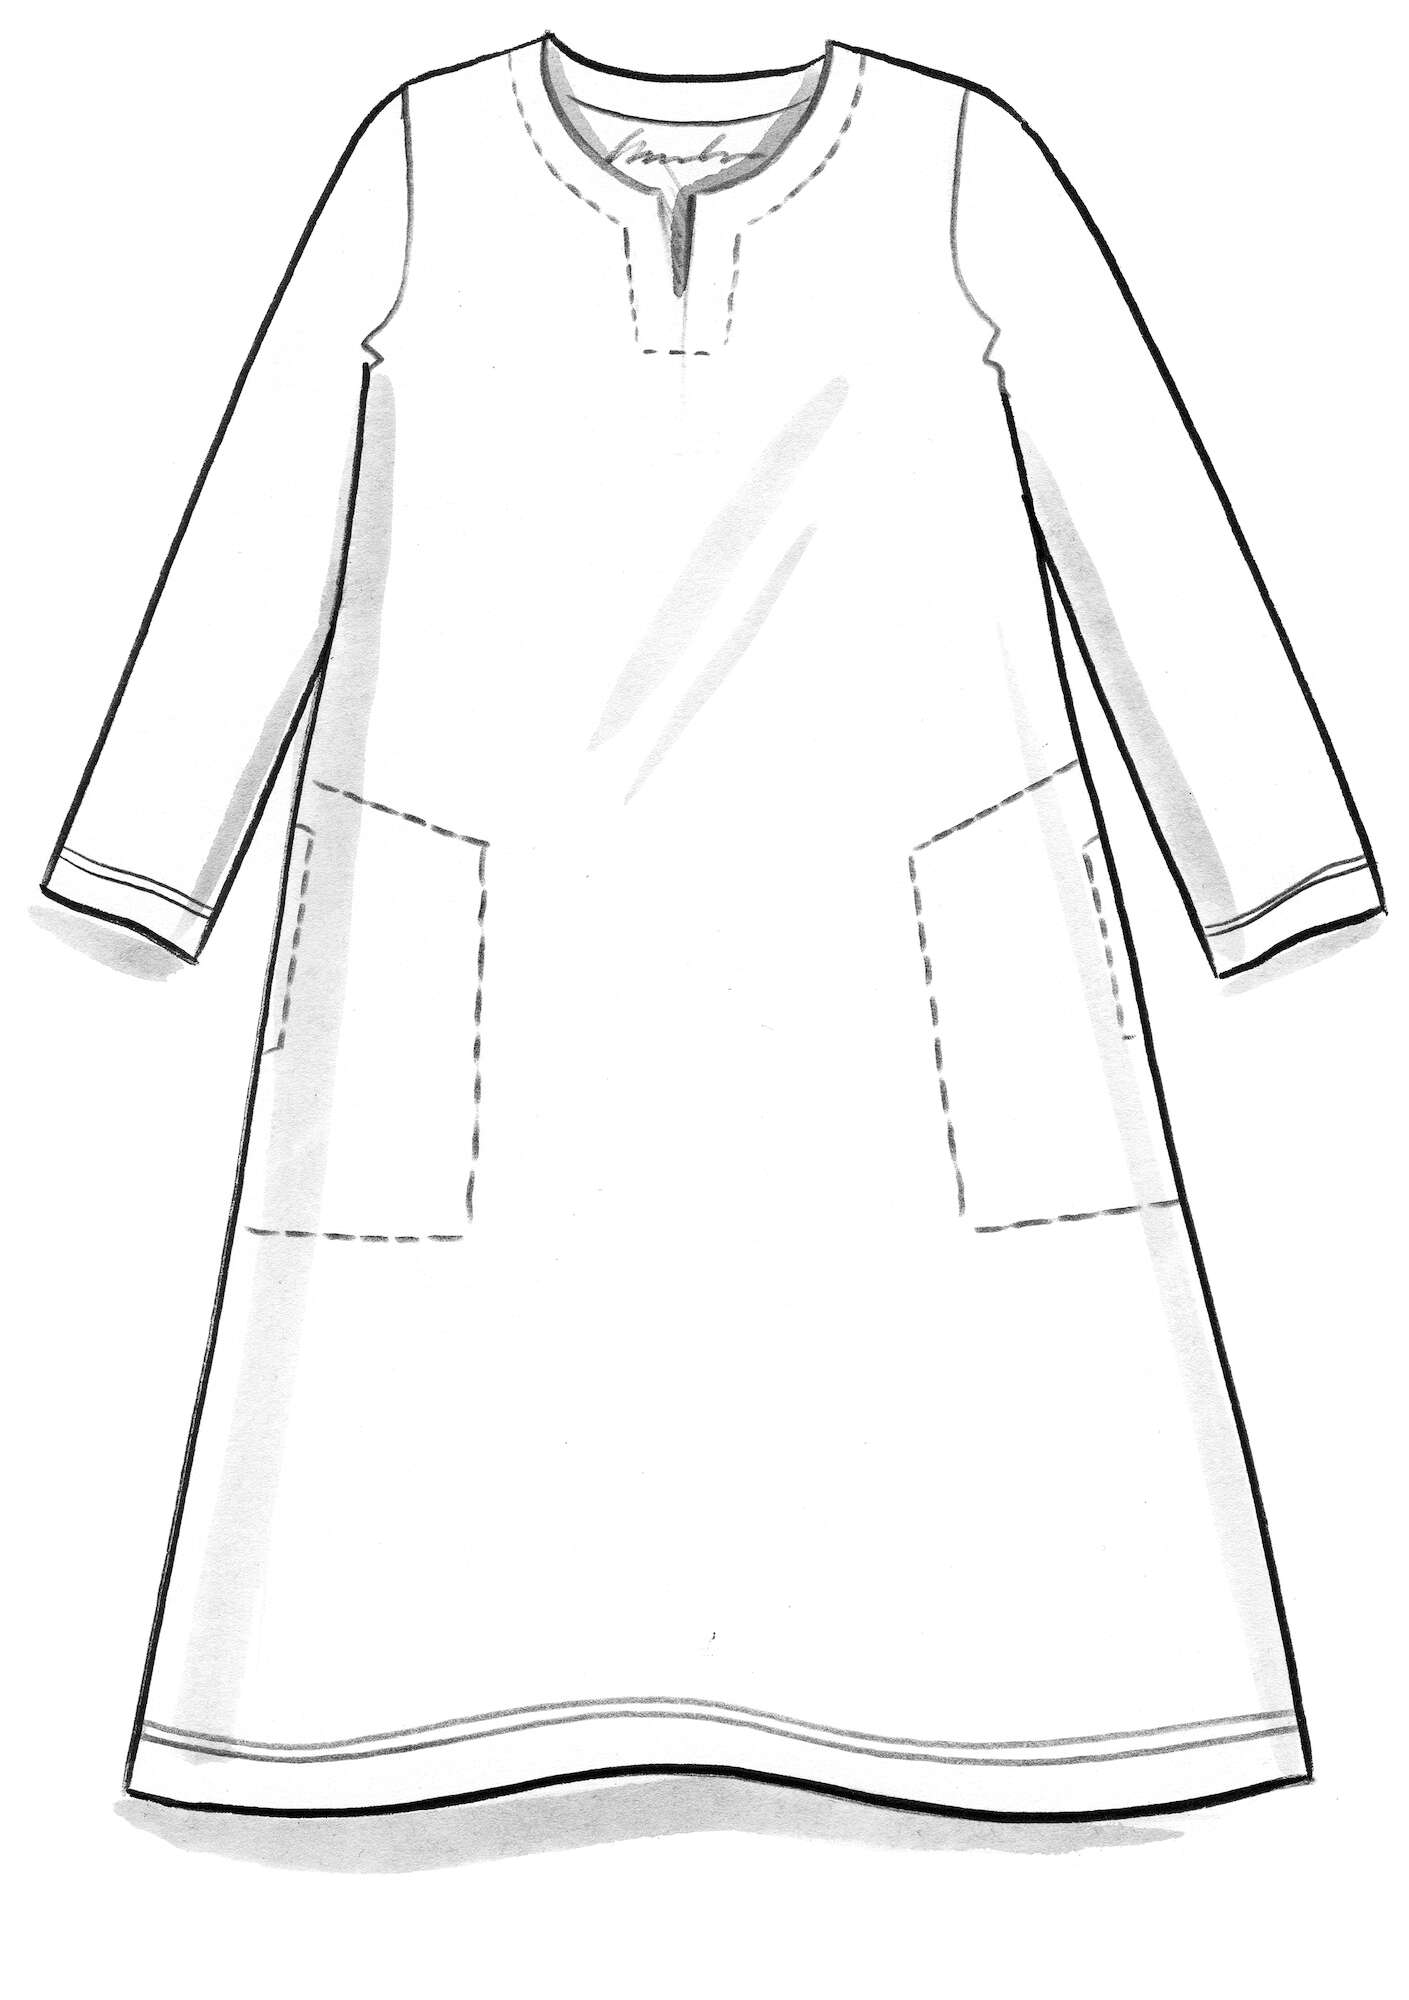 Tricot jurk  Belle  van biologisch katoen/elastaan